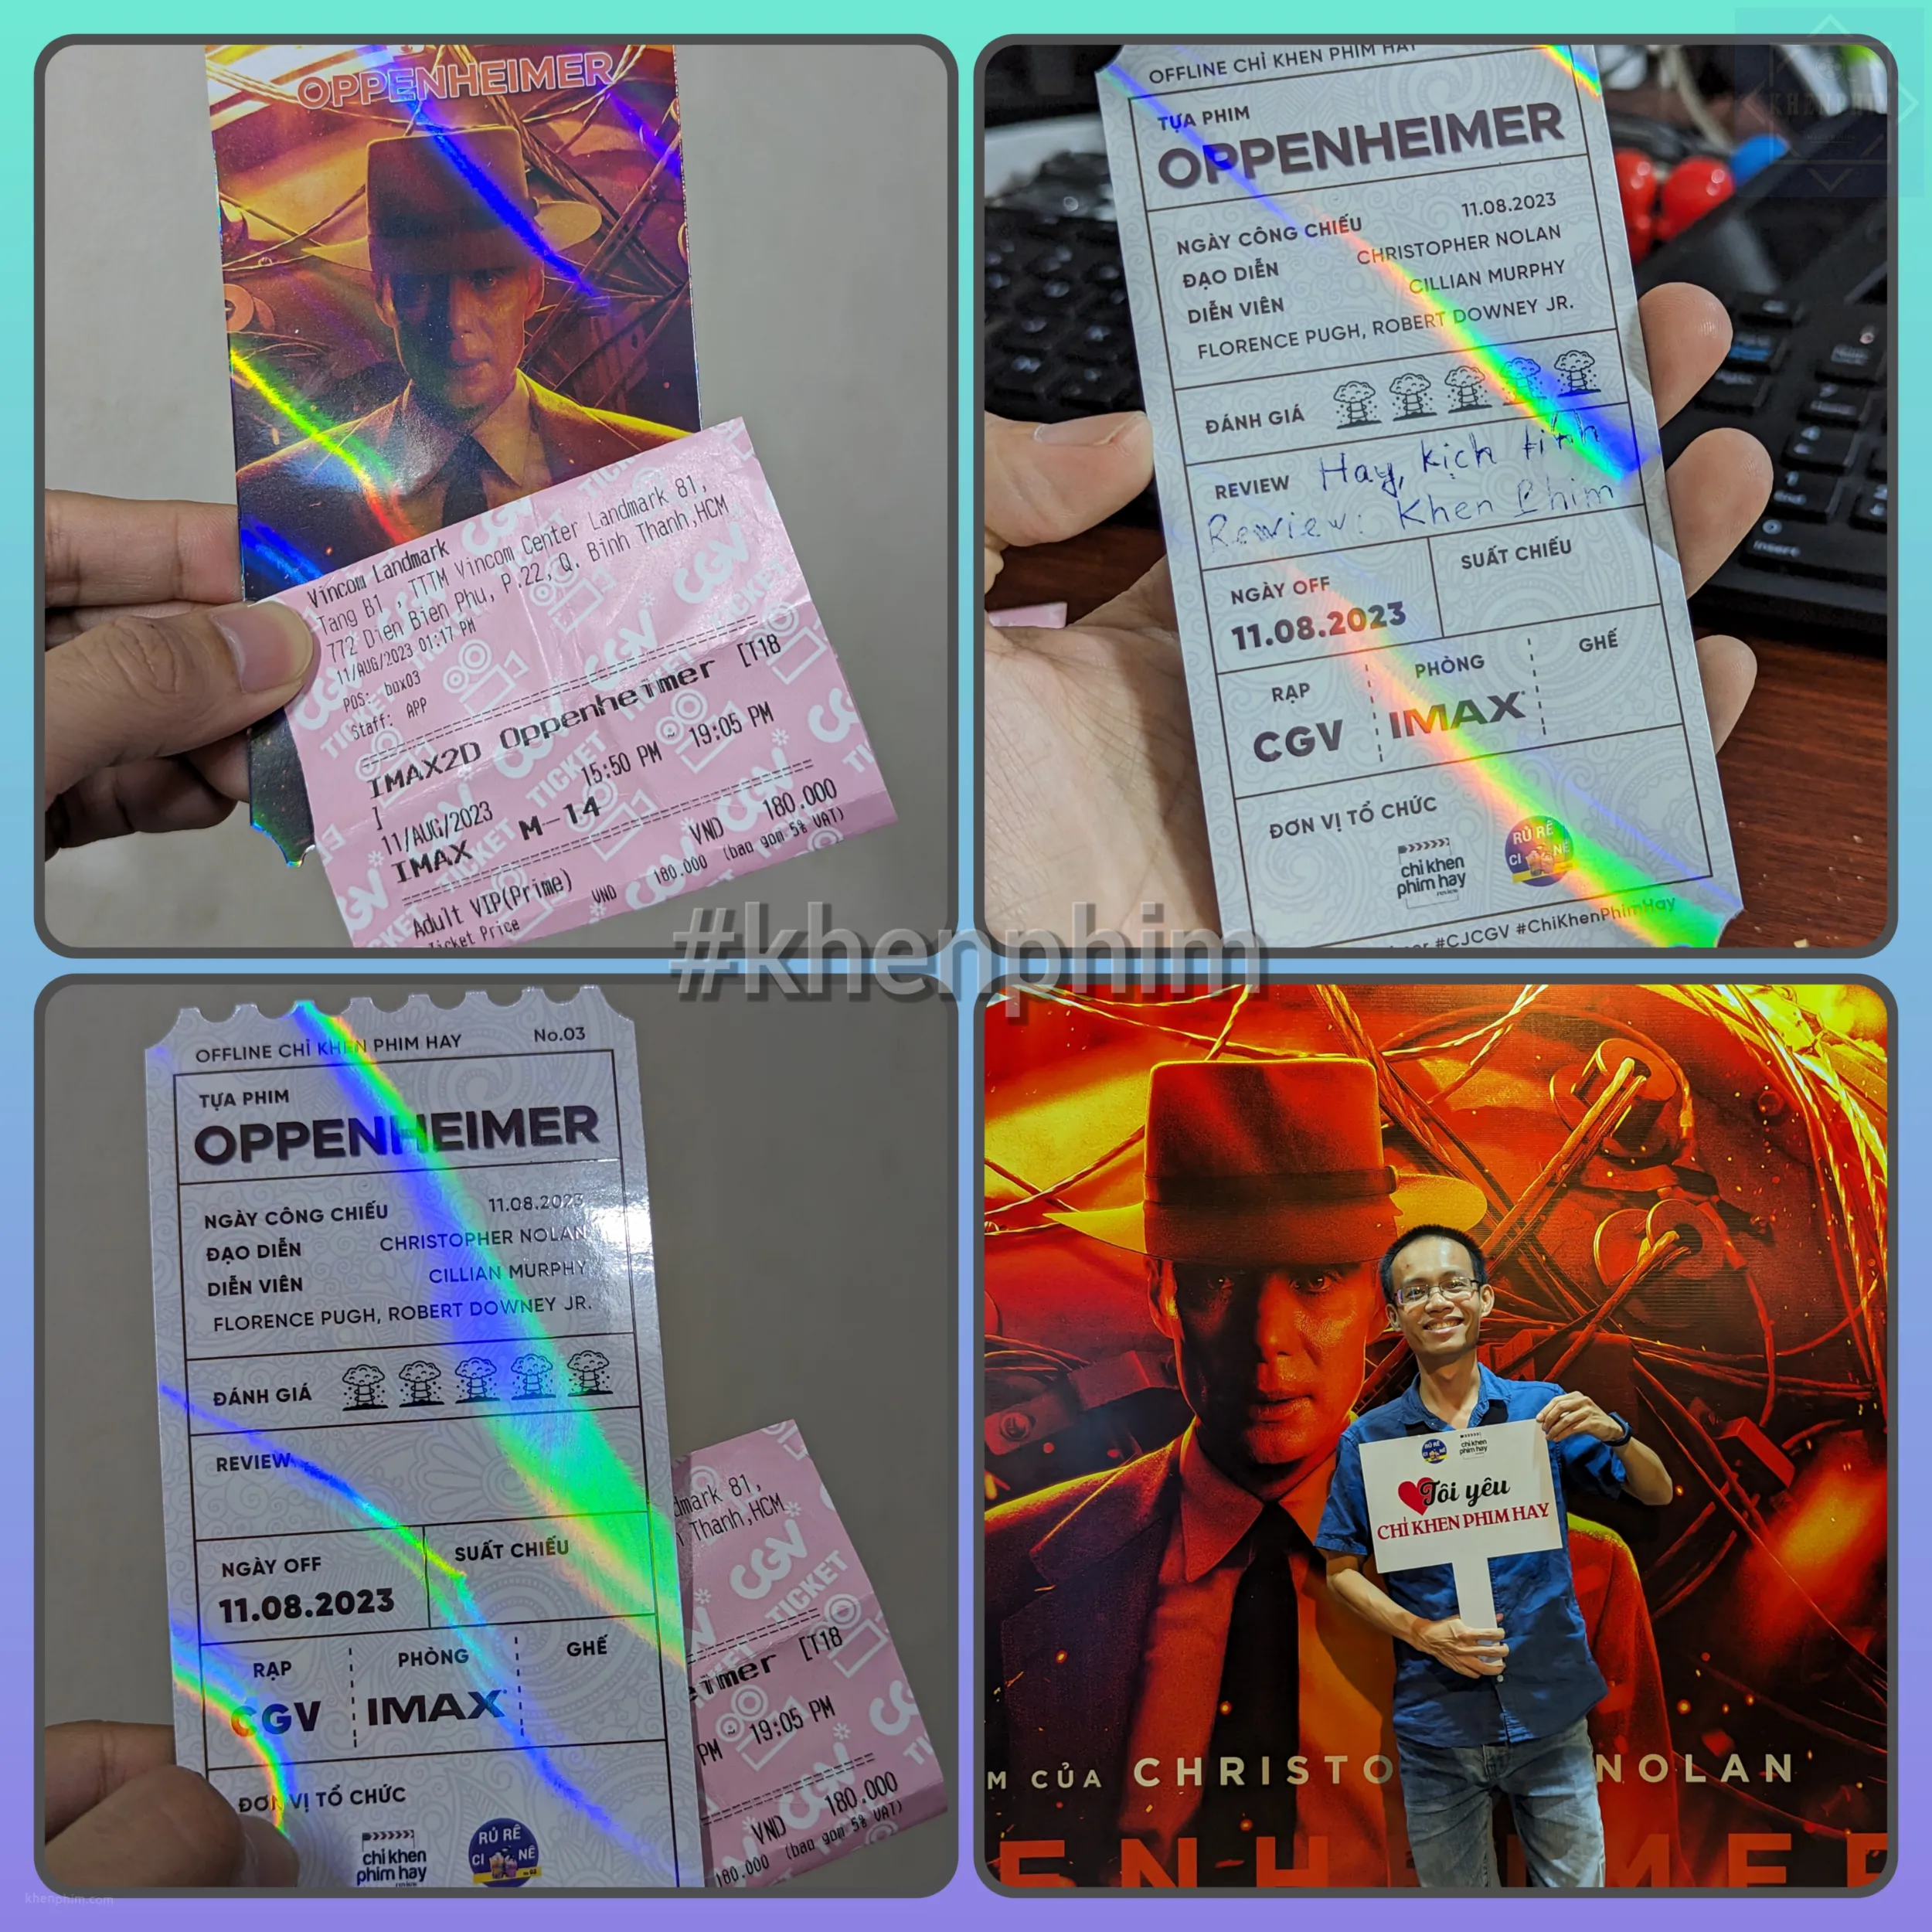 Vé xem phim suất IMAX (màu hồng) và vé offline do fanpage "Chỉ Khen Phim Hay" tổ chức. Khen Phim xin cảm ơn.